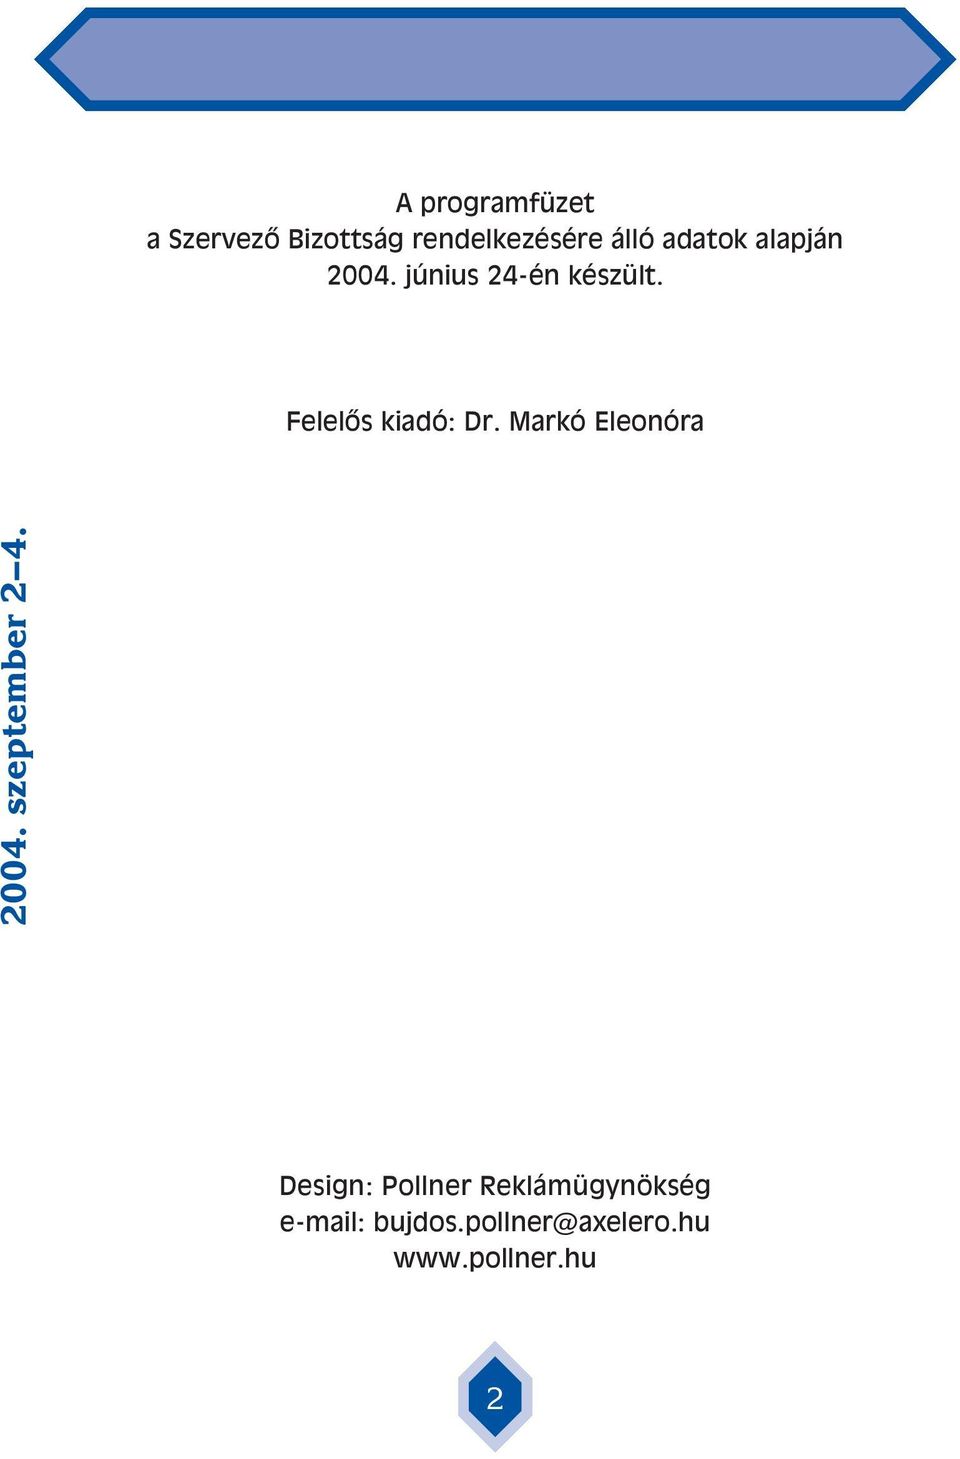 Felelôs kiadó: Dr. Markó Eleonóra 2004. szeptember 2 4.